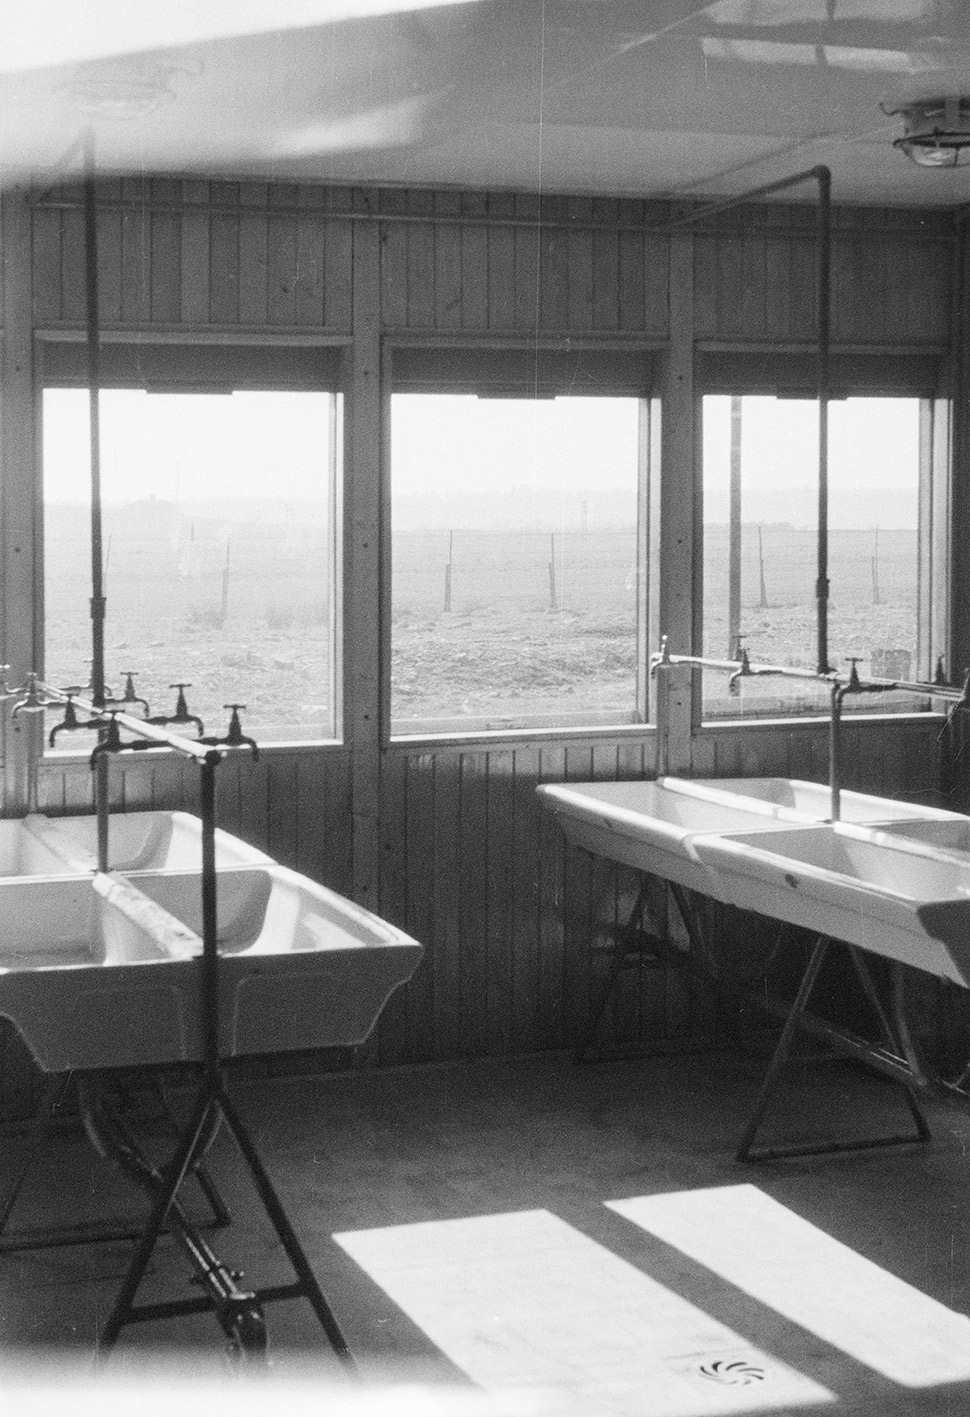 School for glassmaking apprentices, Croismare, 1948 (Jean Prouvé, with architect Henri Prouvé).